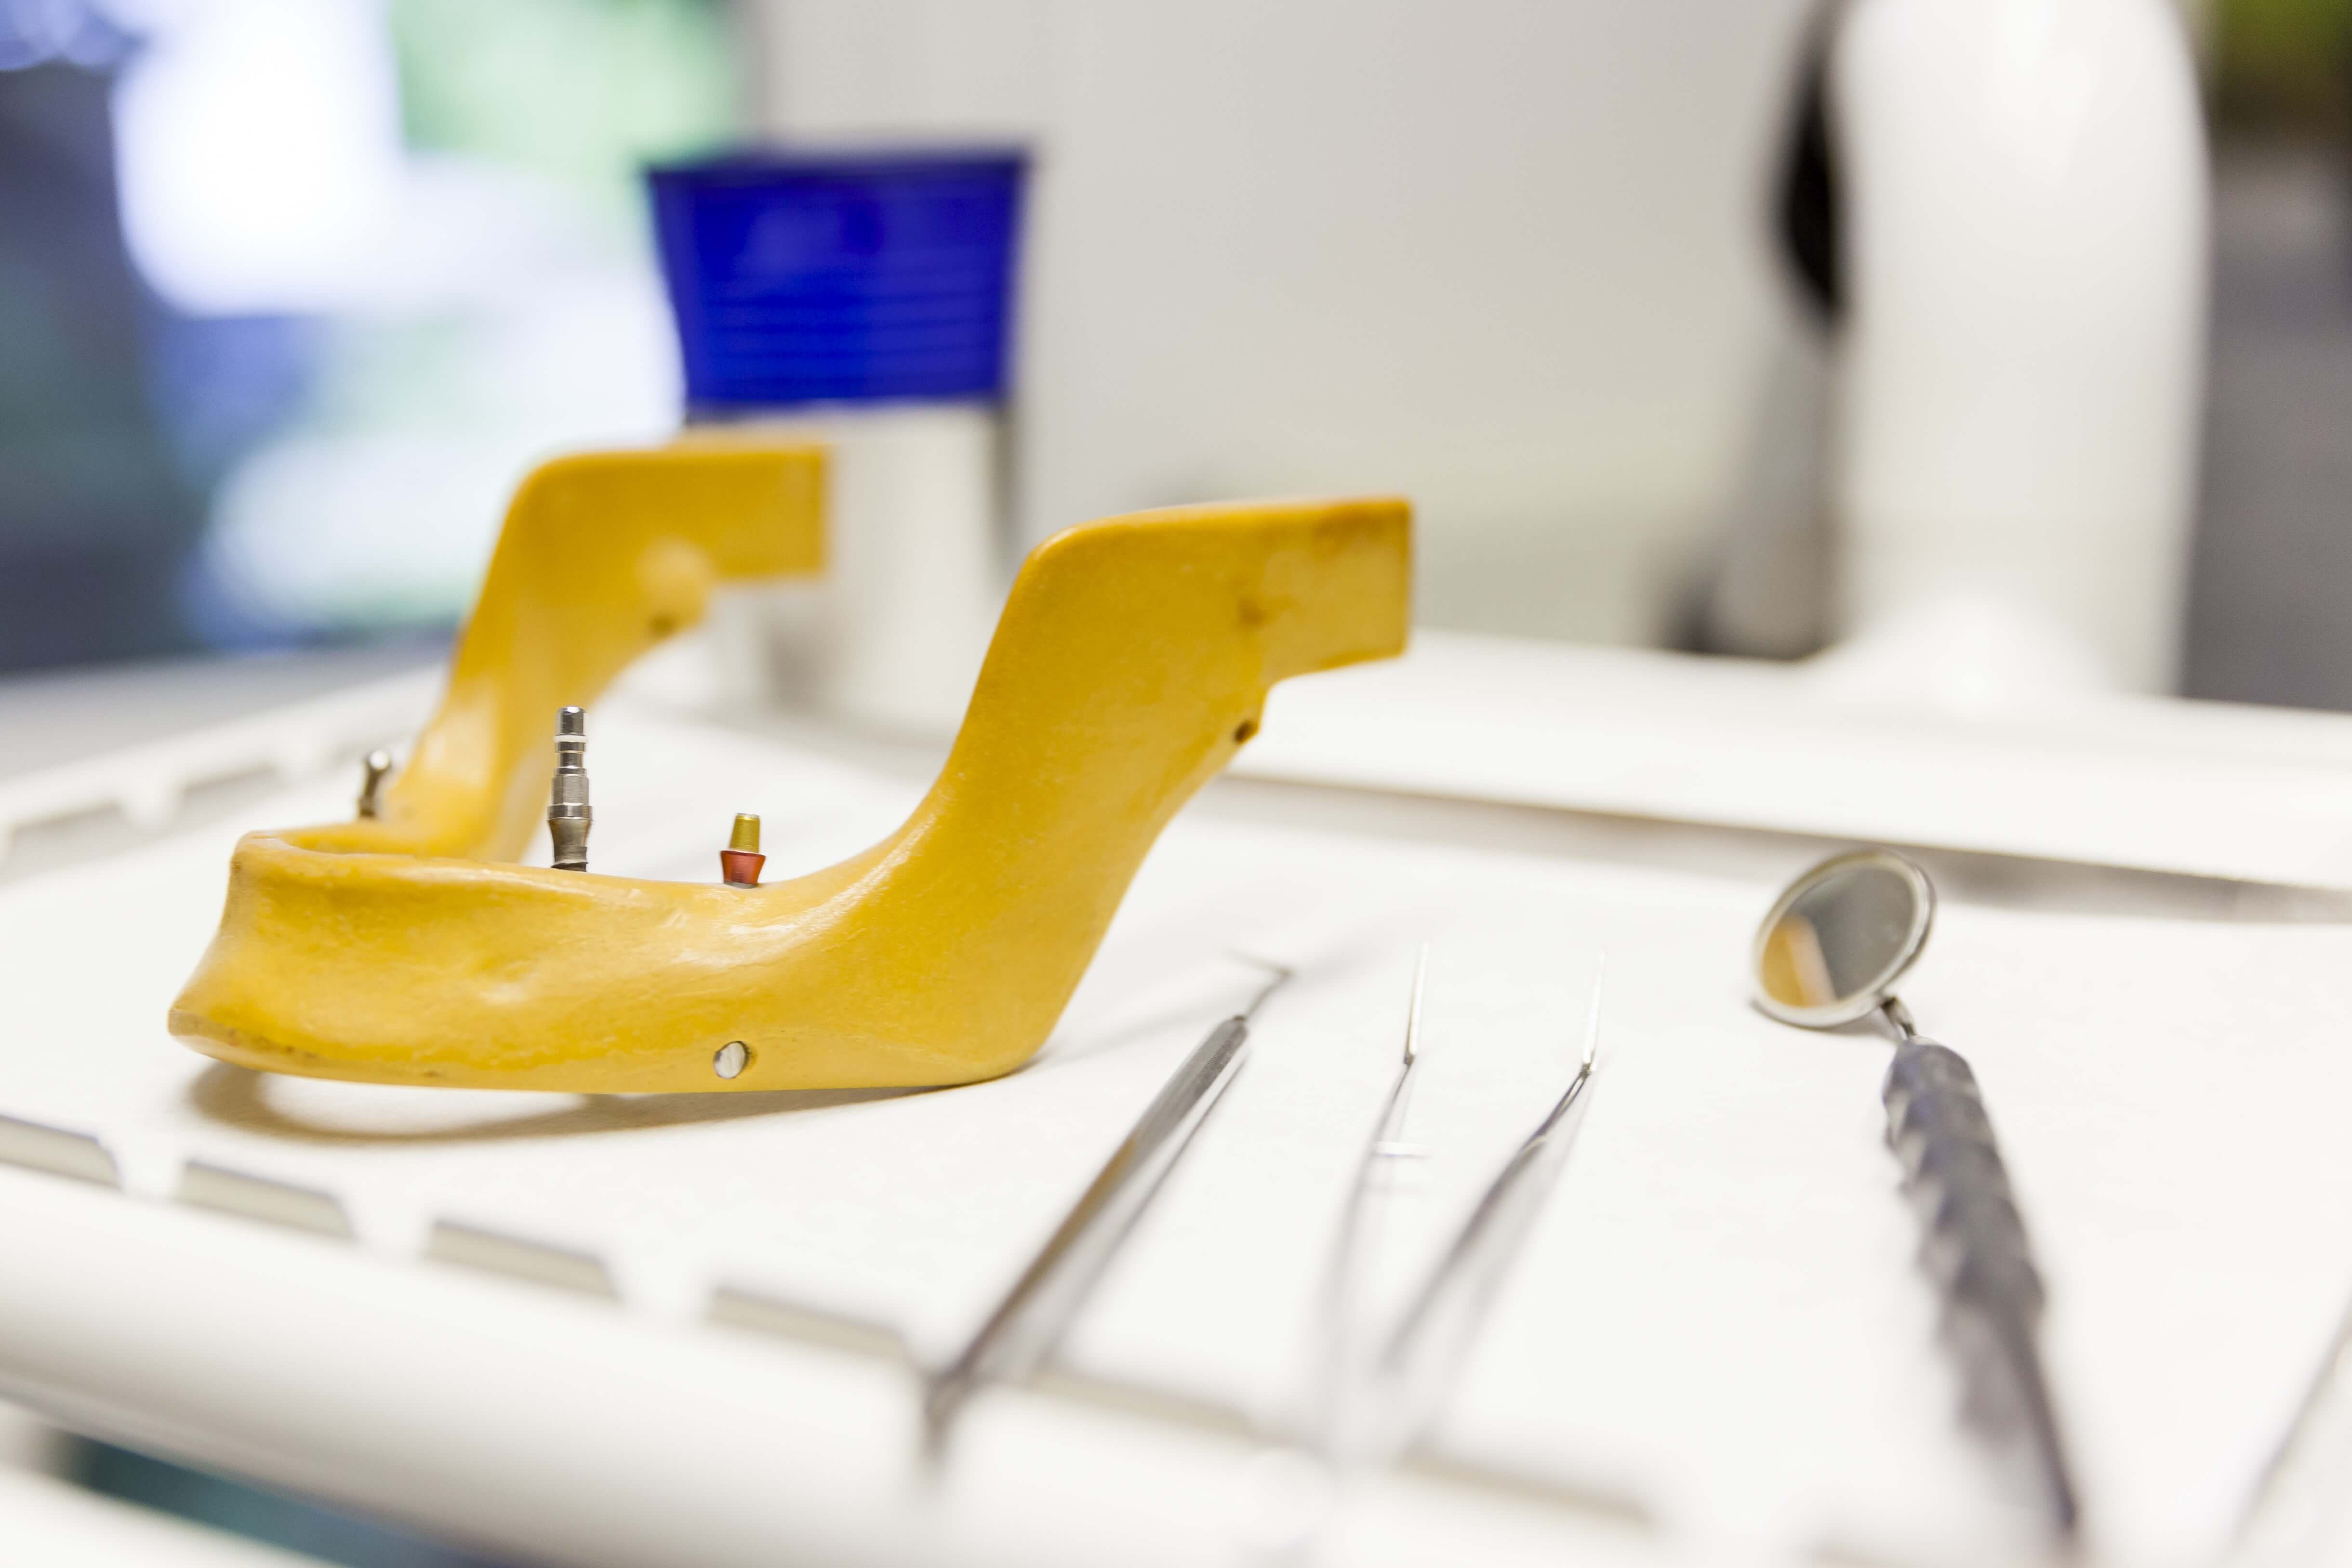 Zahnmedizinische Instrumente auf Behandlungstisch